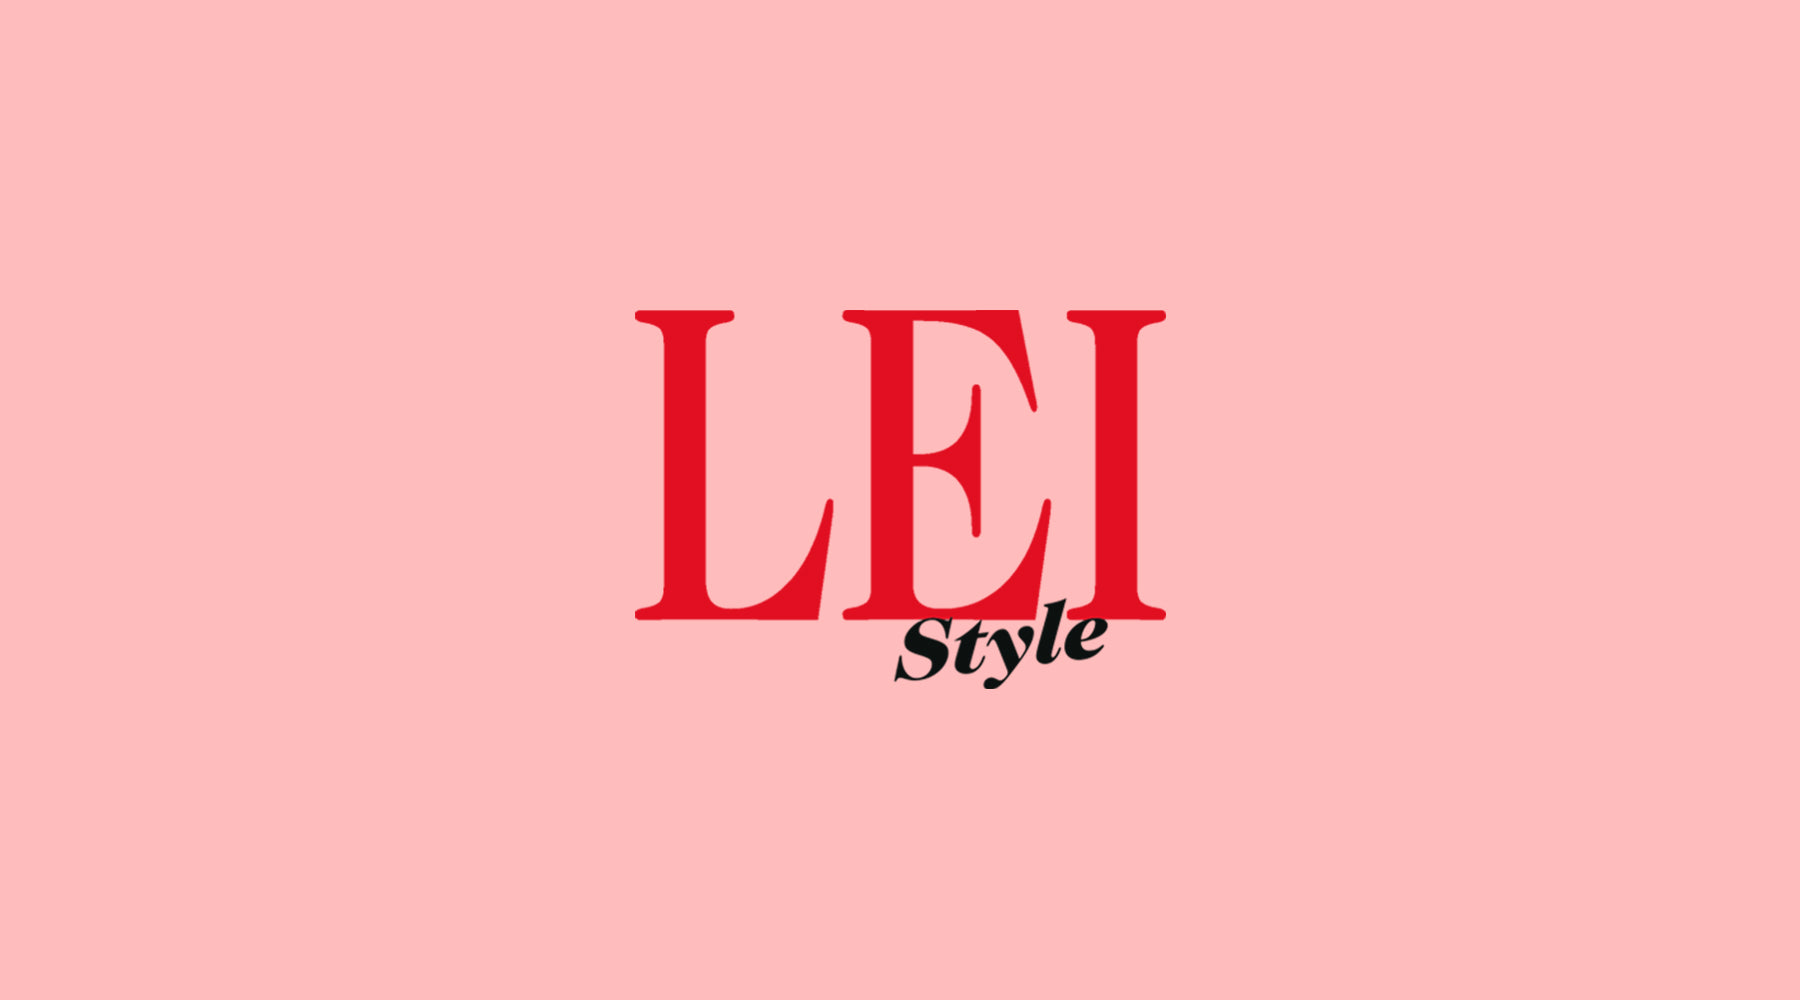 LEI Style - La dote essenziale